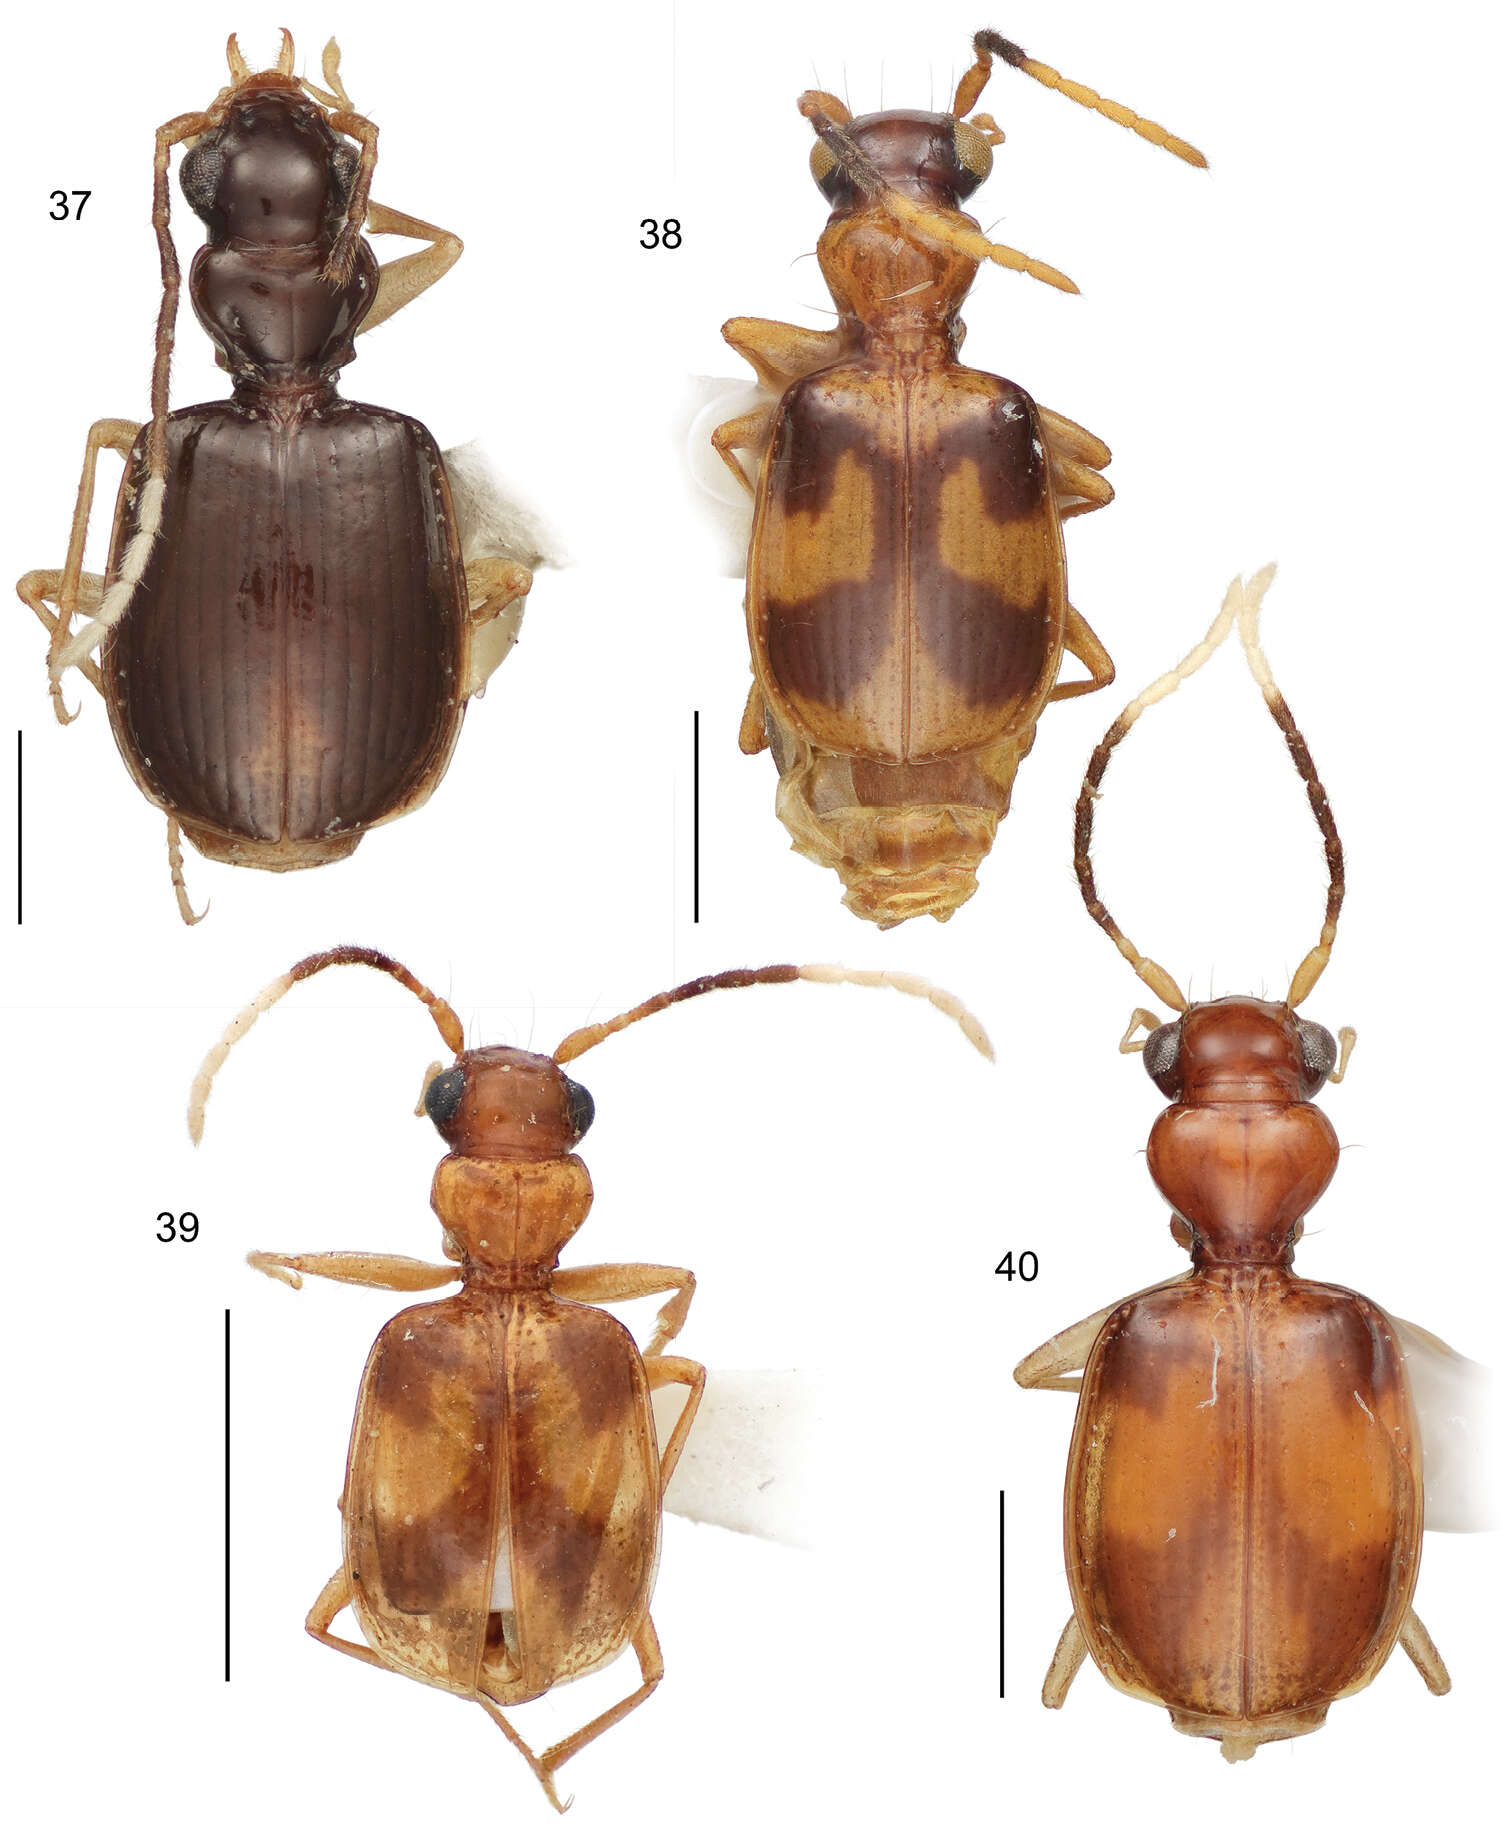 Image of Asklepia asuncionensis Erwin & Zamorano 2014